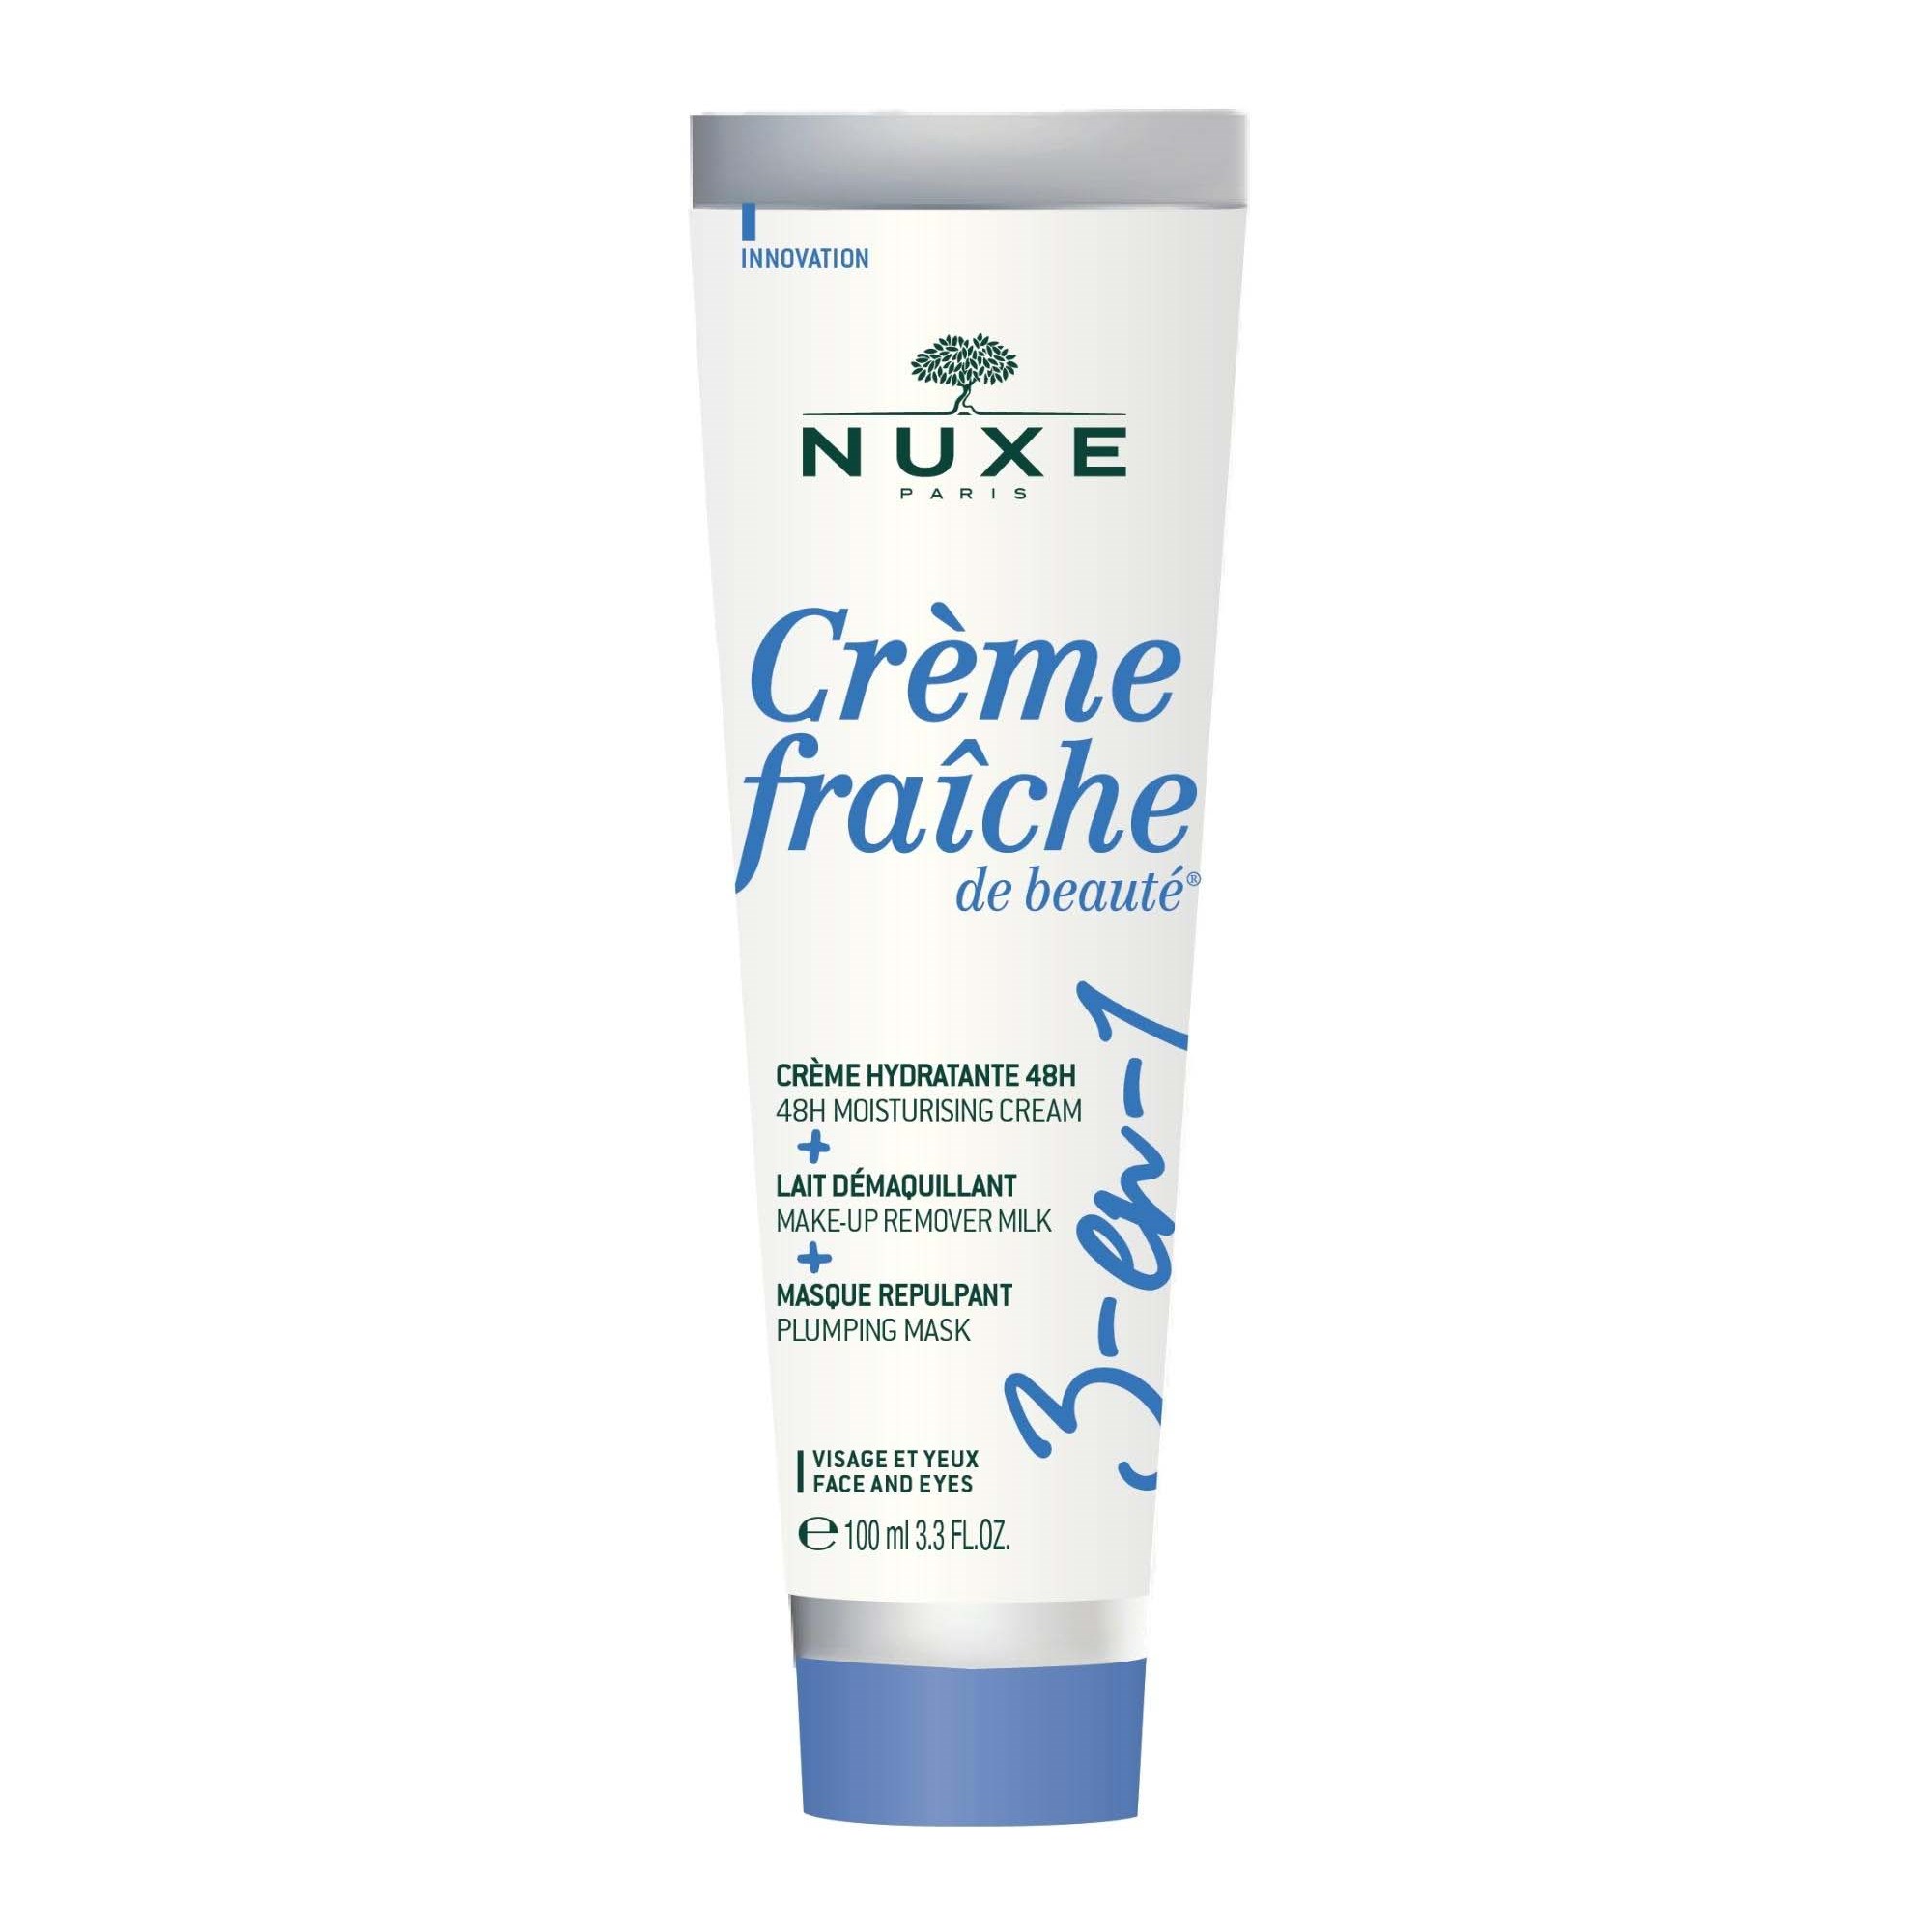 Nuxe Crème Fraîche de Beauté 3-in-1 48H Moisturising Cream, Make-Up Re